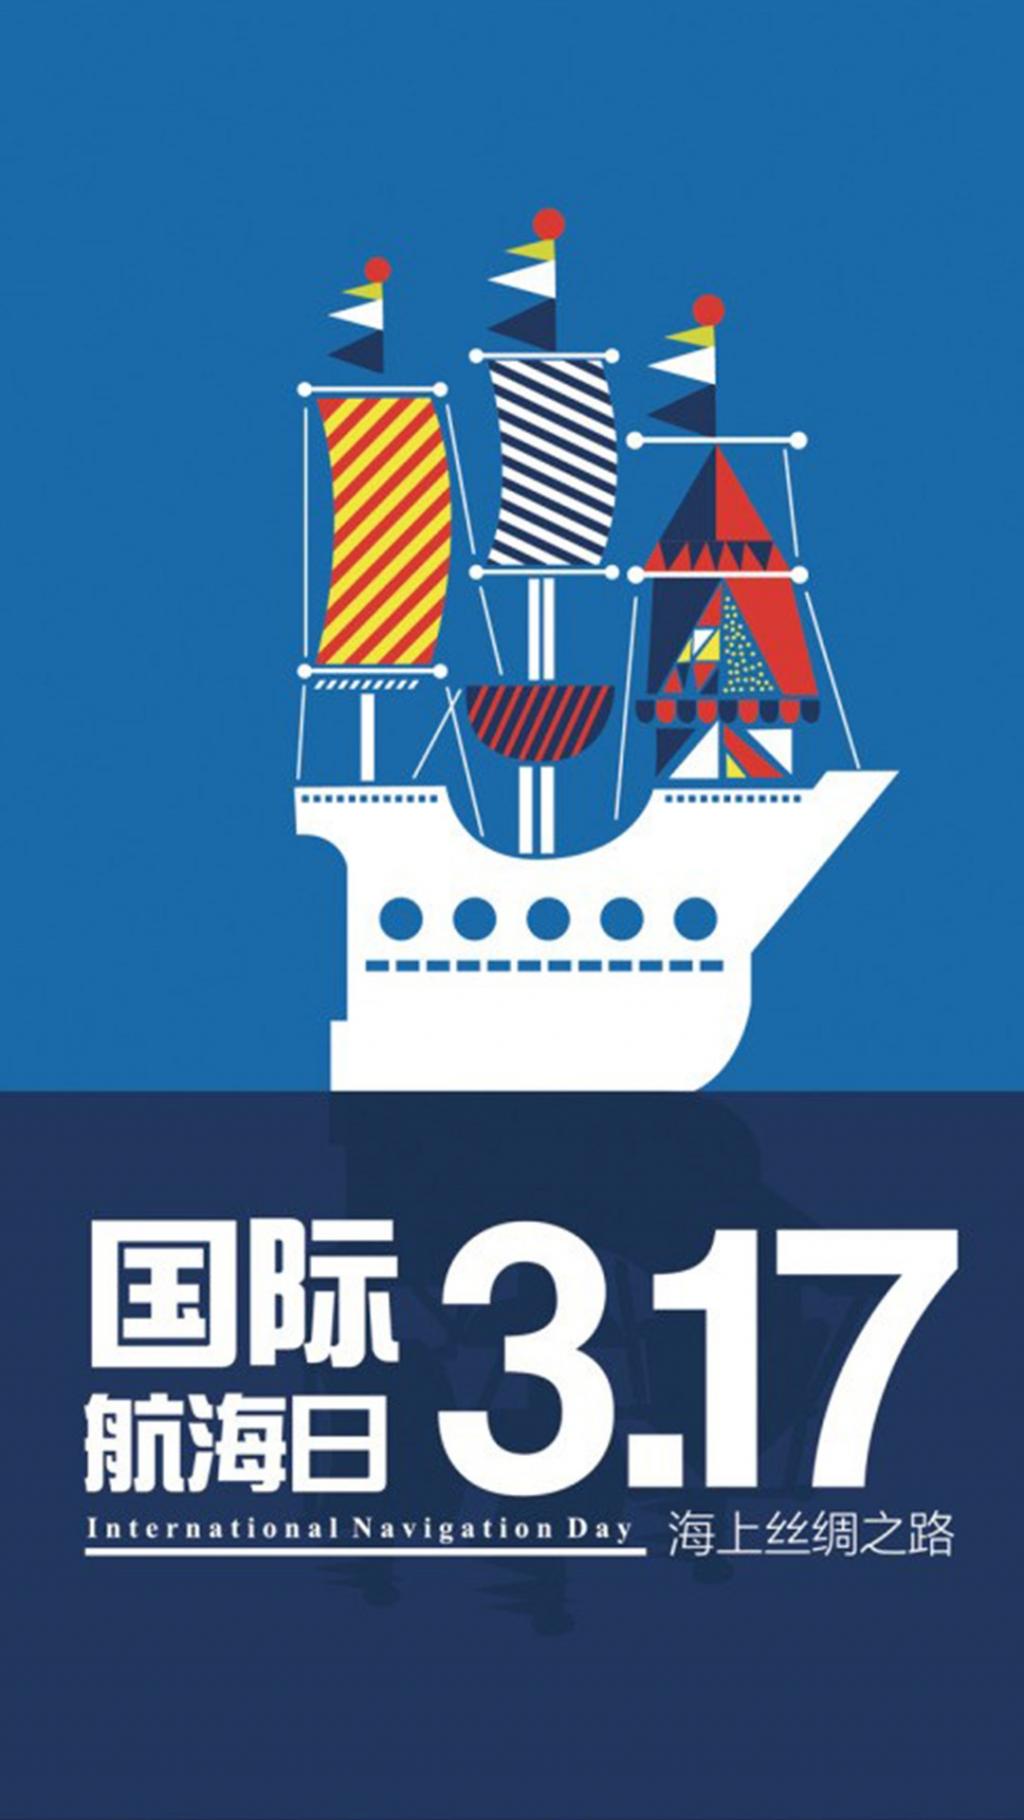 3月17日国际海航日宣传海报